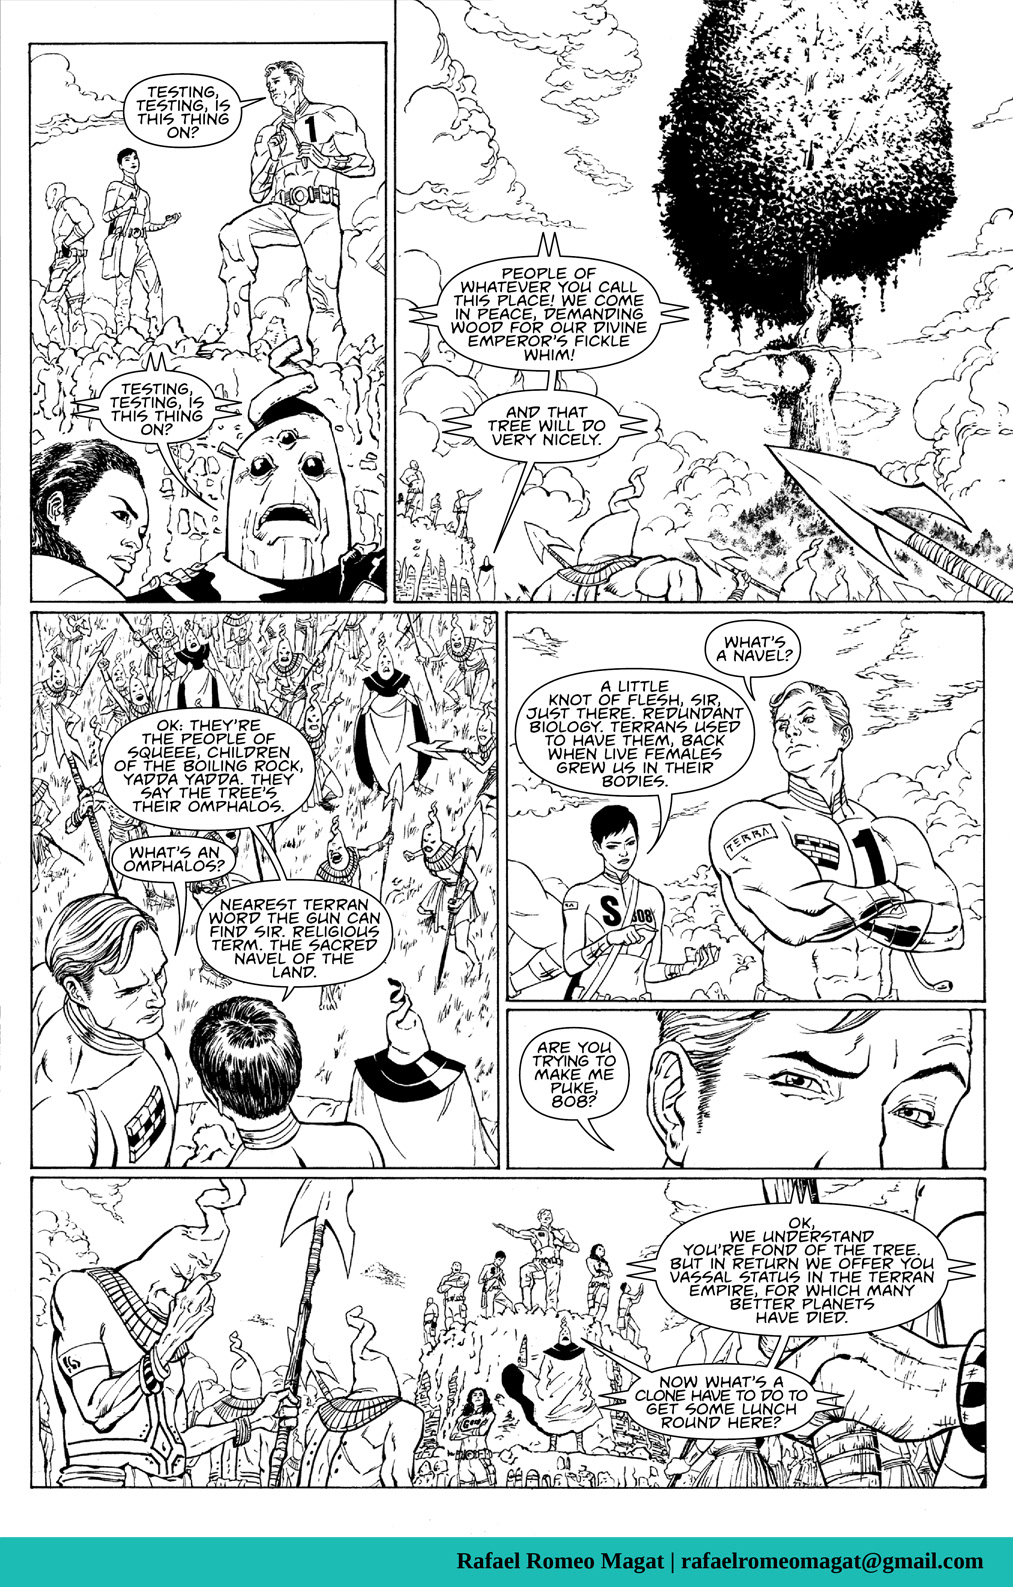 Comic Book black and white comic art sci-fi Sci-fi Comic